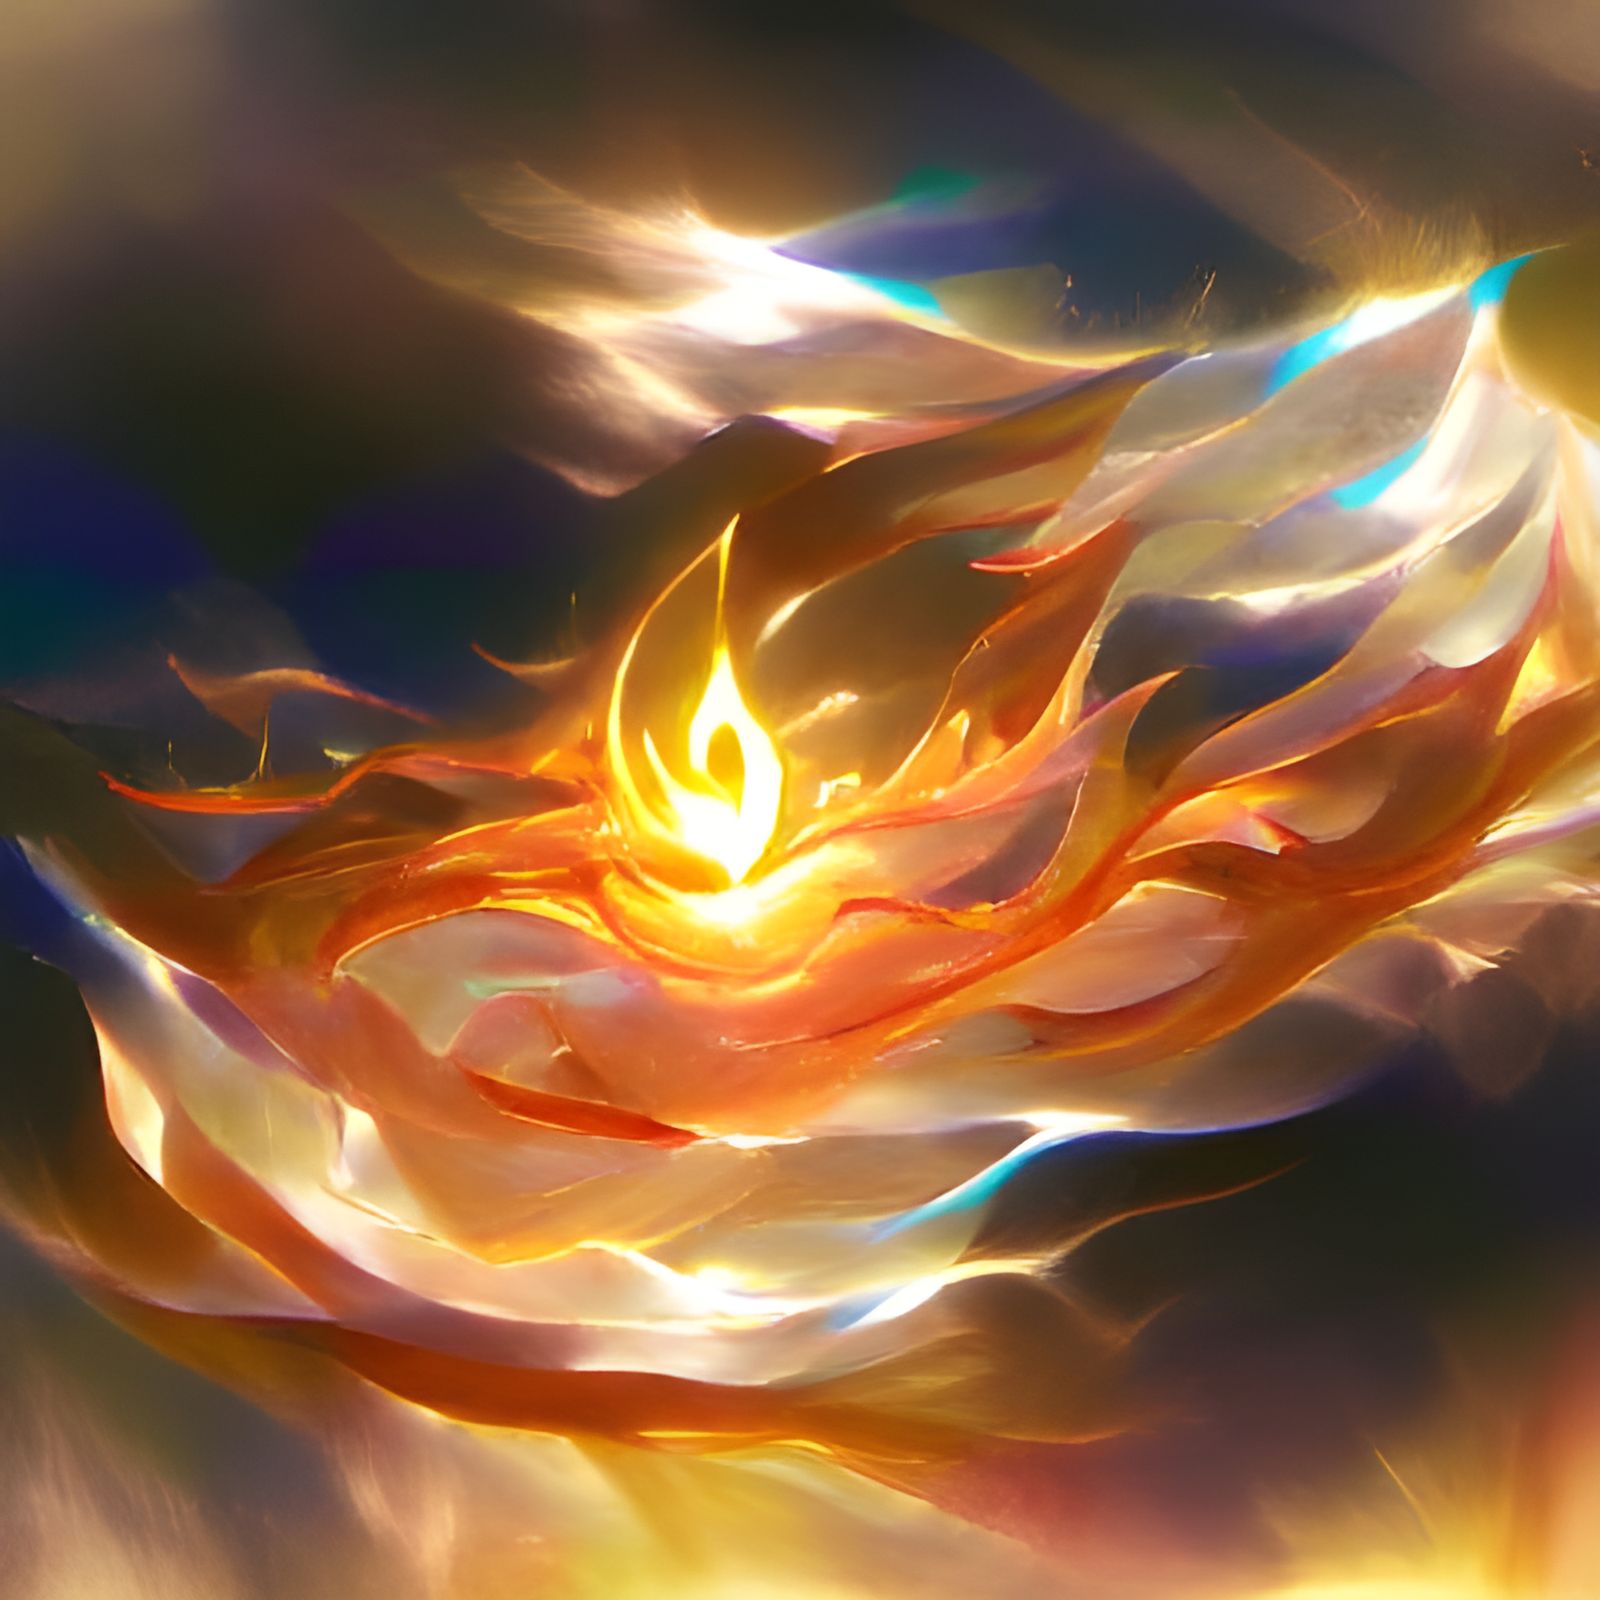 Flames of eternal light